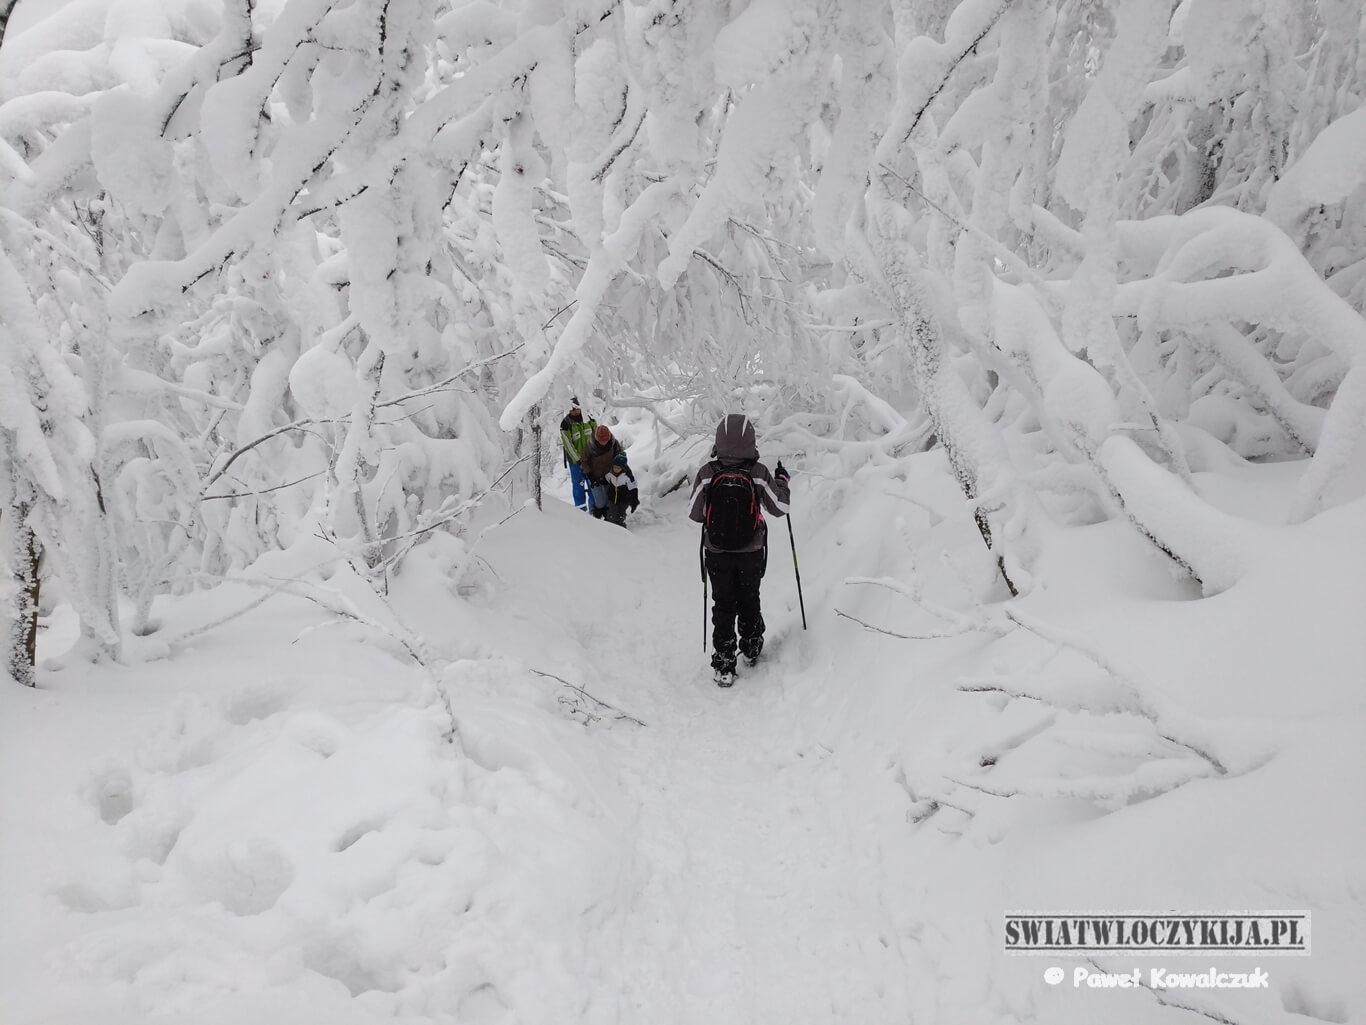 Szlak na Rawki. Pokryty gęstym śniegim szlak oraz drzewa oraz ludzie przedzierający się przez śnieg.